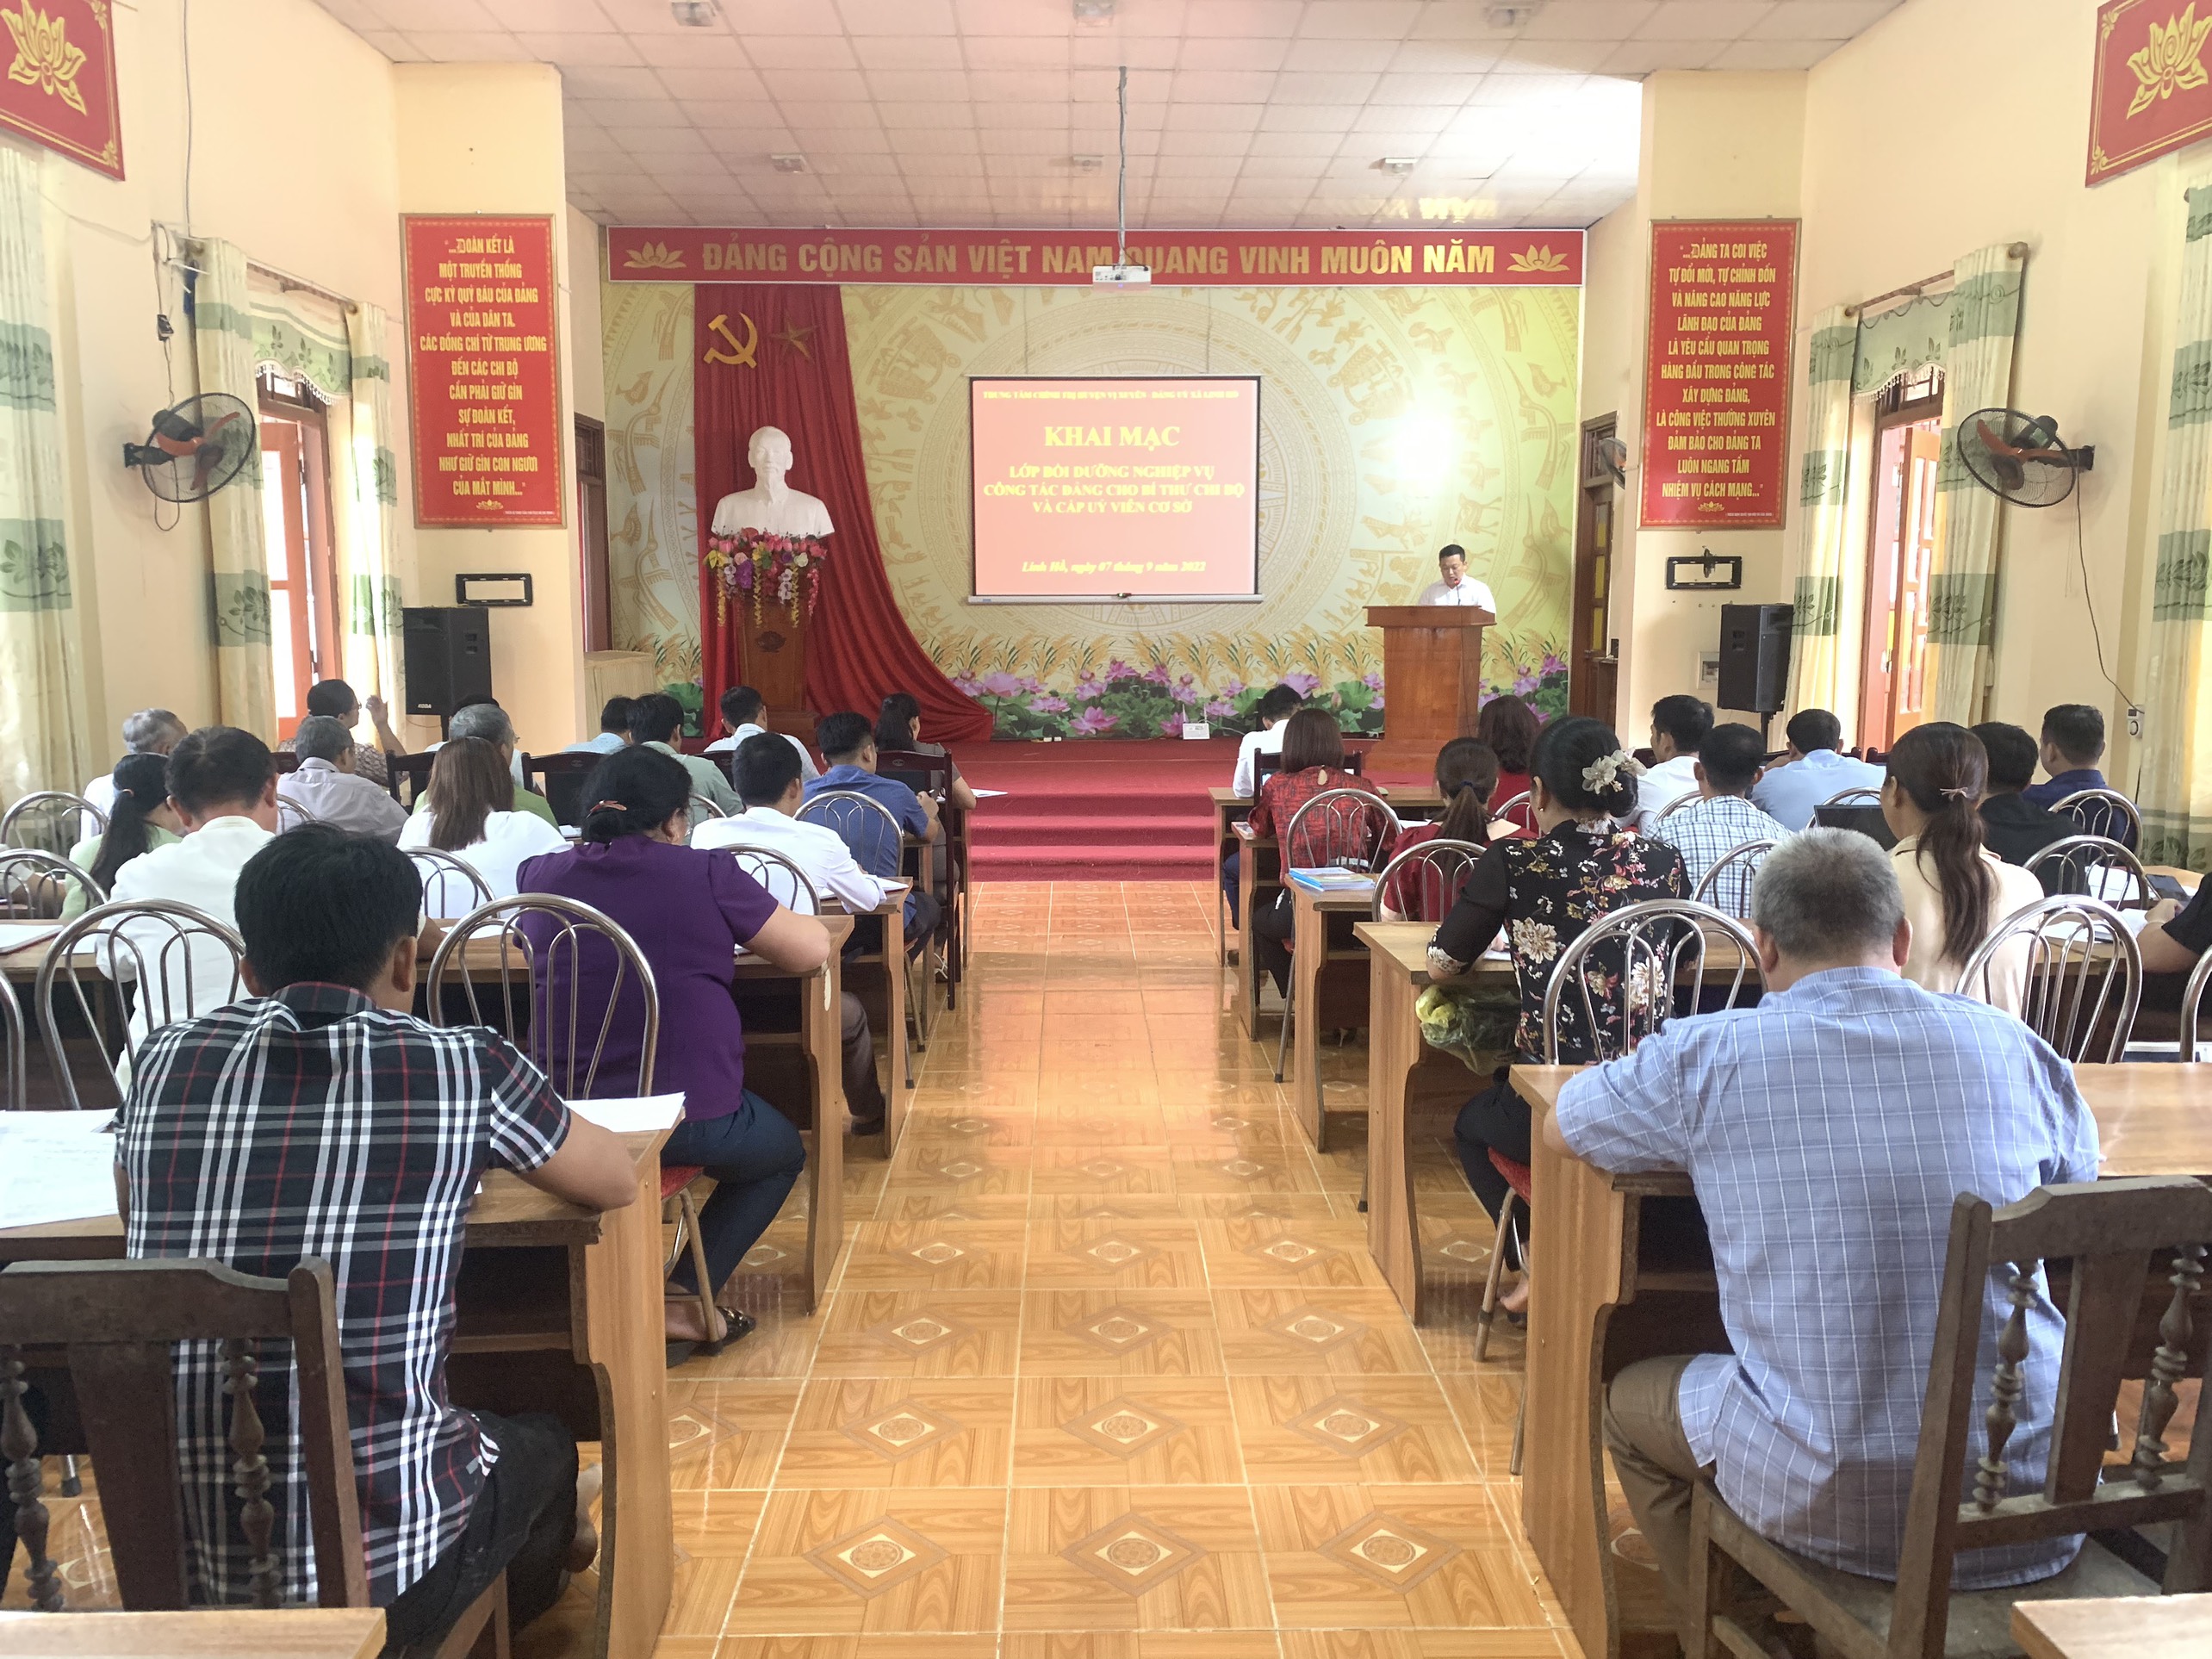 Khai giảng lớp bồi dưỡng công tác đảng cho cấp ủy viên cơ sở tại xã Linh Hồ